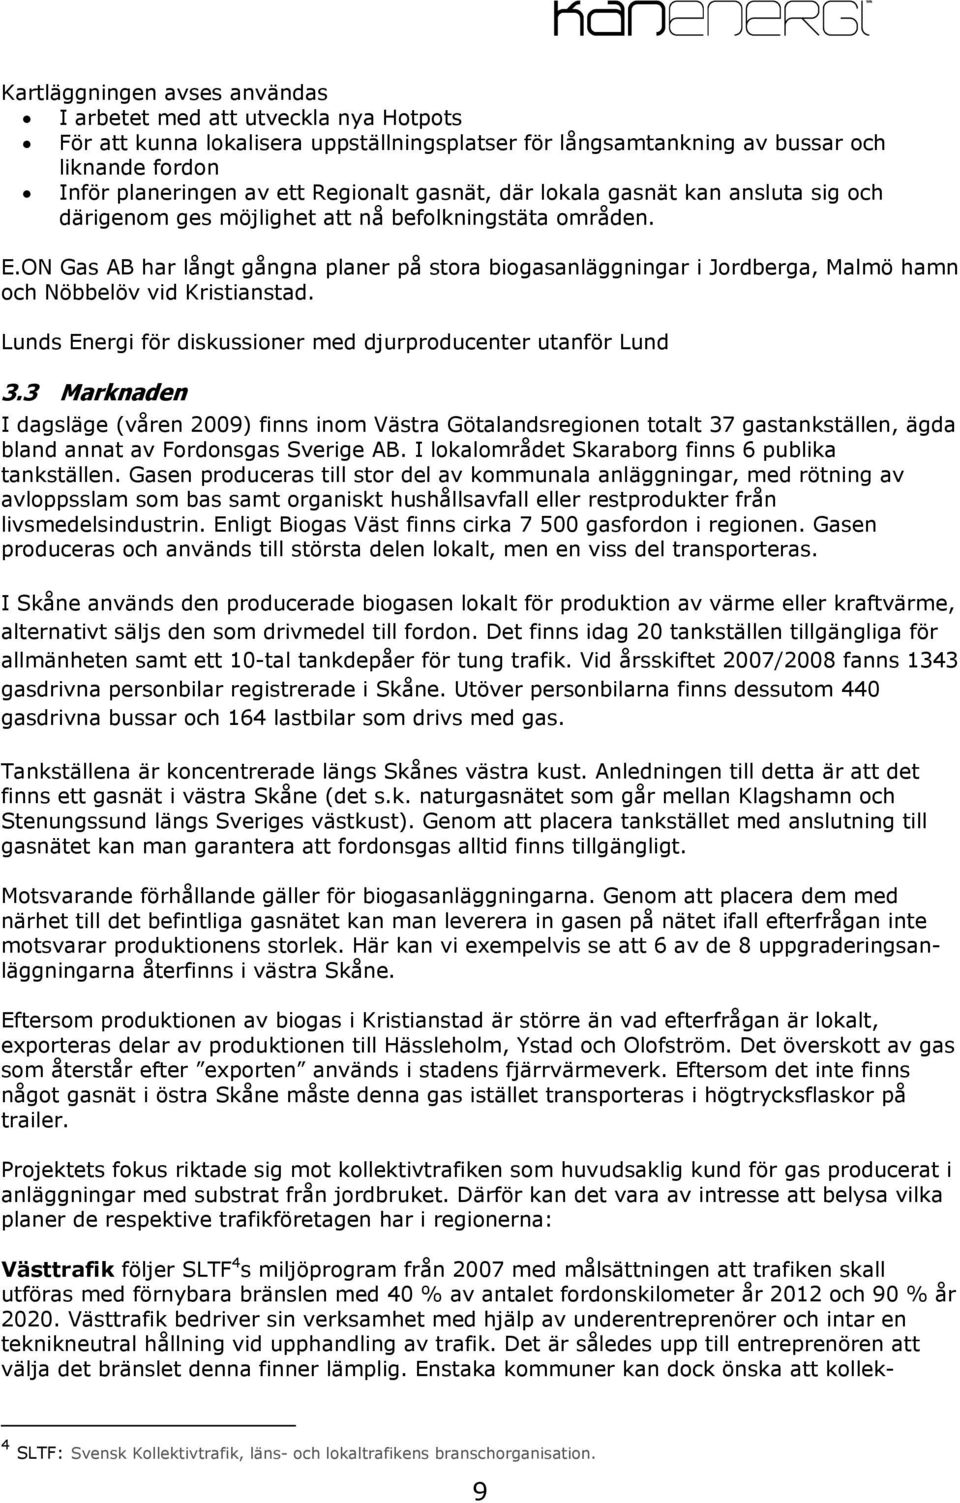 ON Gas AB har långt gångna planer på stora biogasanläggningar i Jordberga, Malmö hamn och Nöbbelöv vid Kristianstad. Lunds Energi för diskussioner med djurproducenter utanför Lund 3.